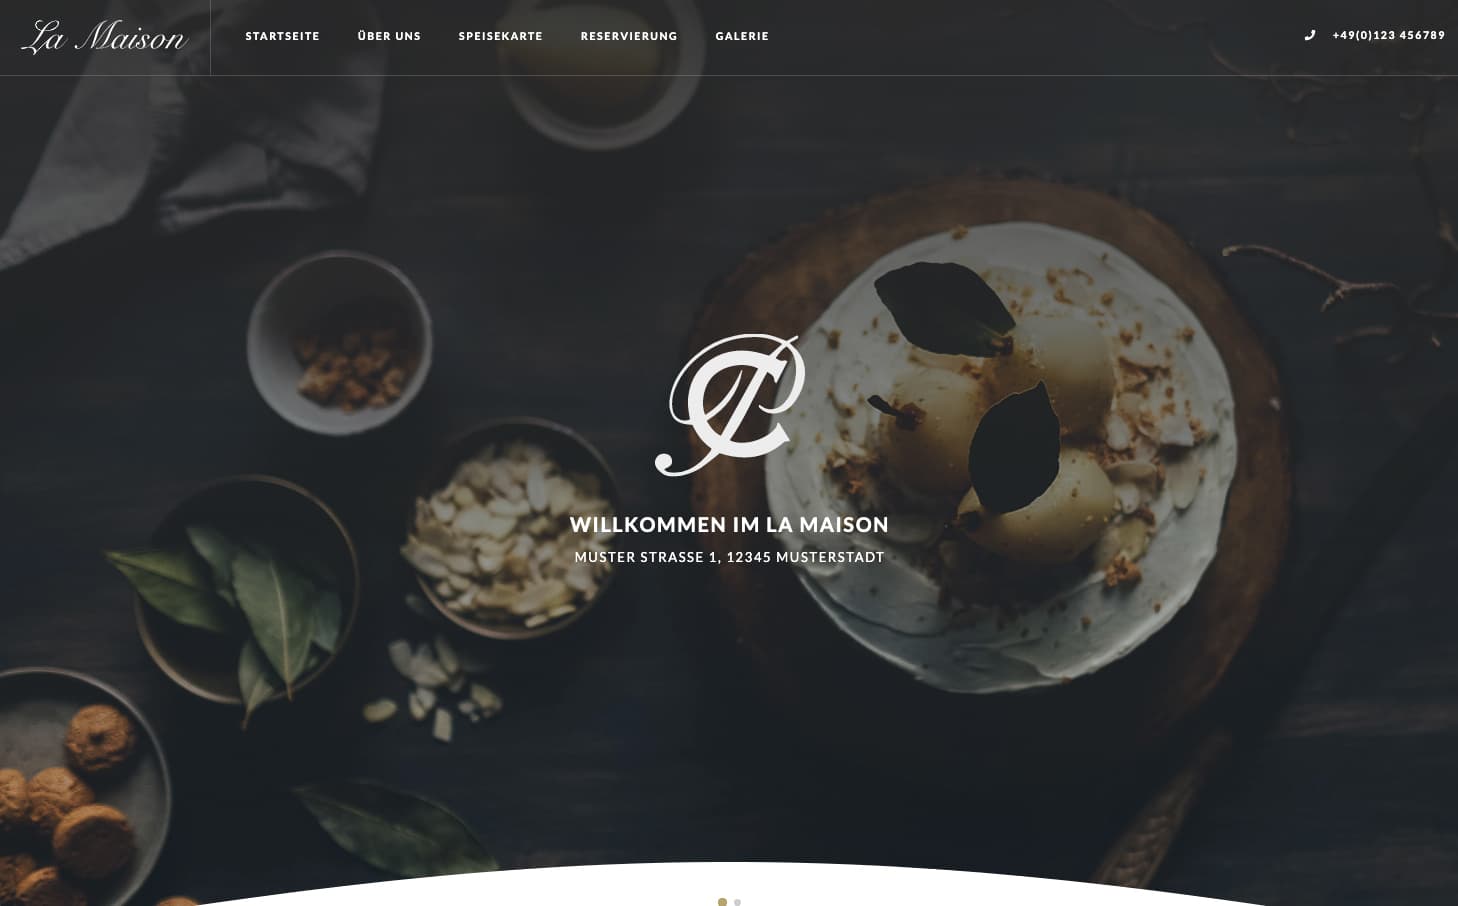 Design 1 MENURY Restaurant Website Homepage